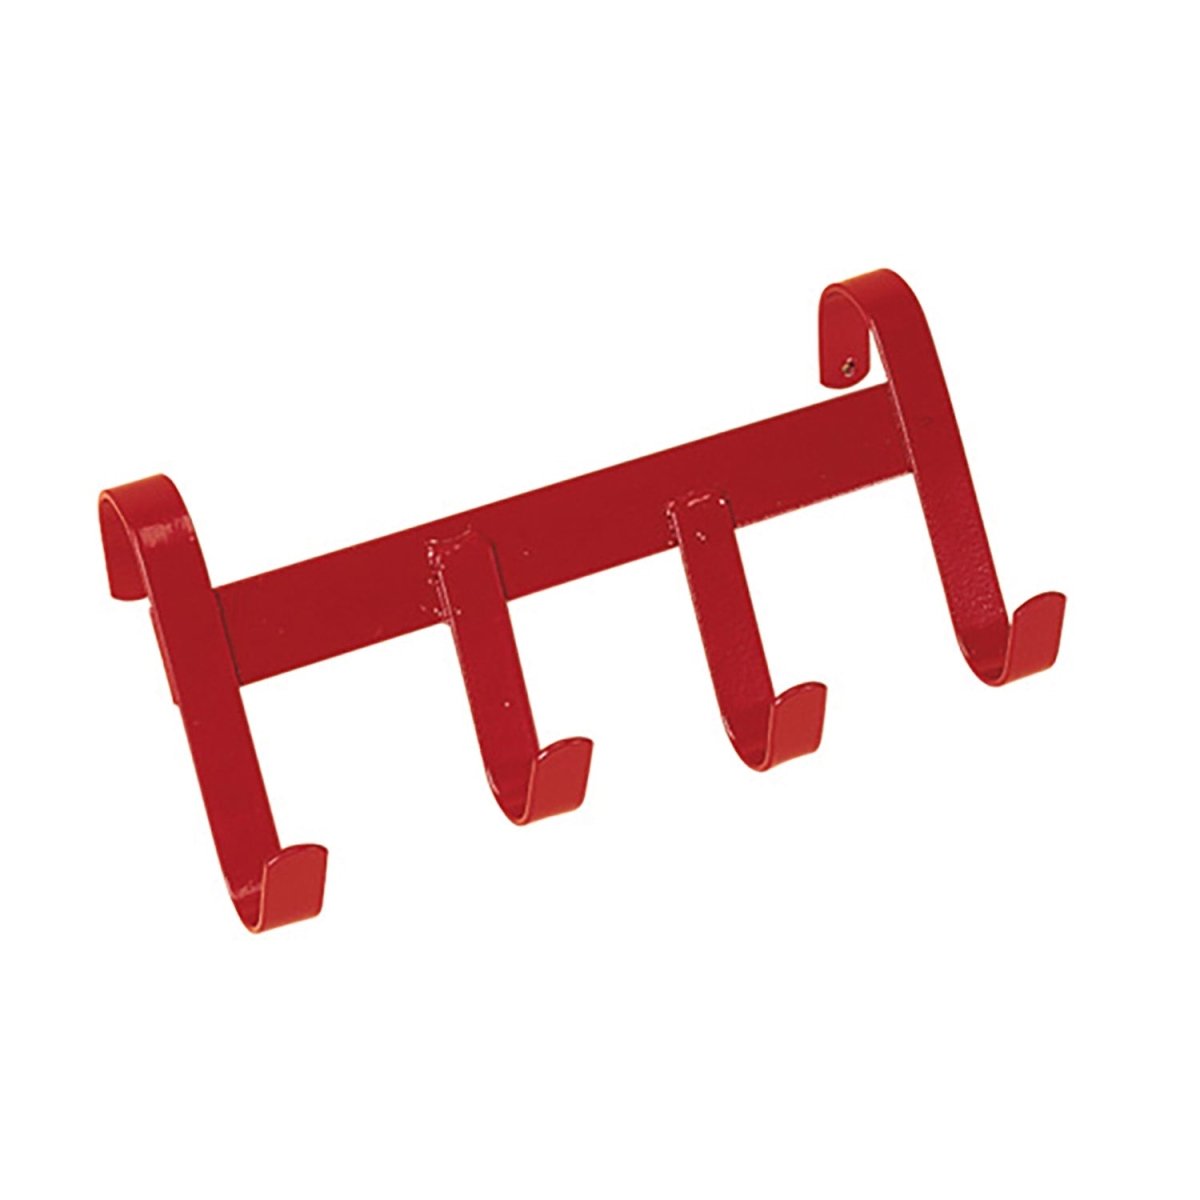 Stubbs Handy Hanger - Red -